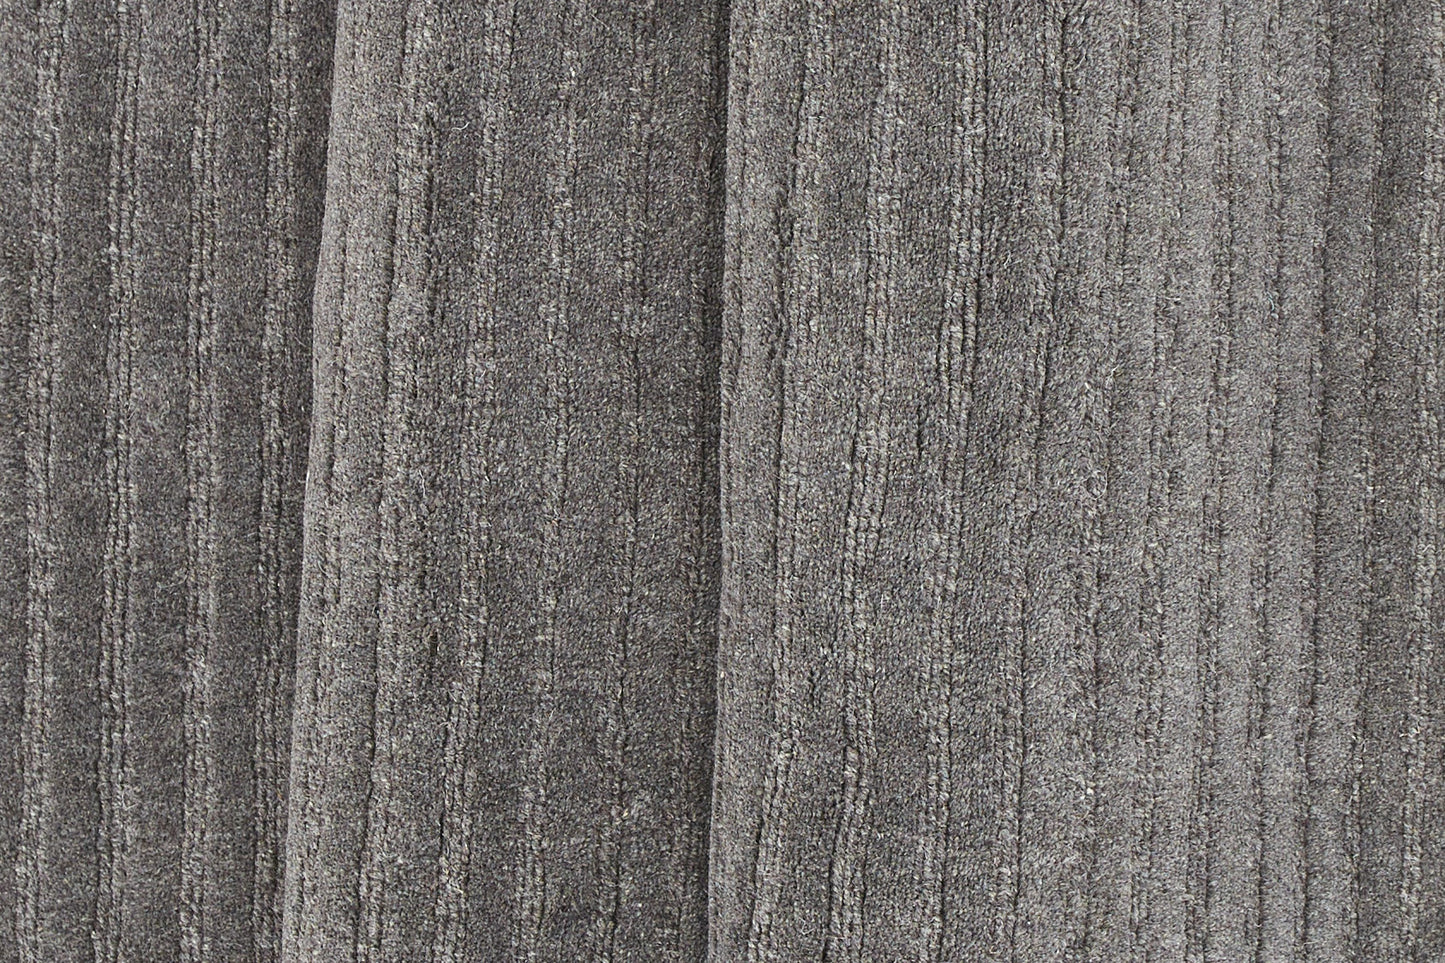 Milton - Gulvtæppe, Uld/polyester/bomuld - 200*70, Rektangulær, Mørkegrå